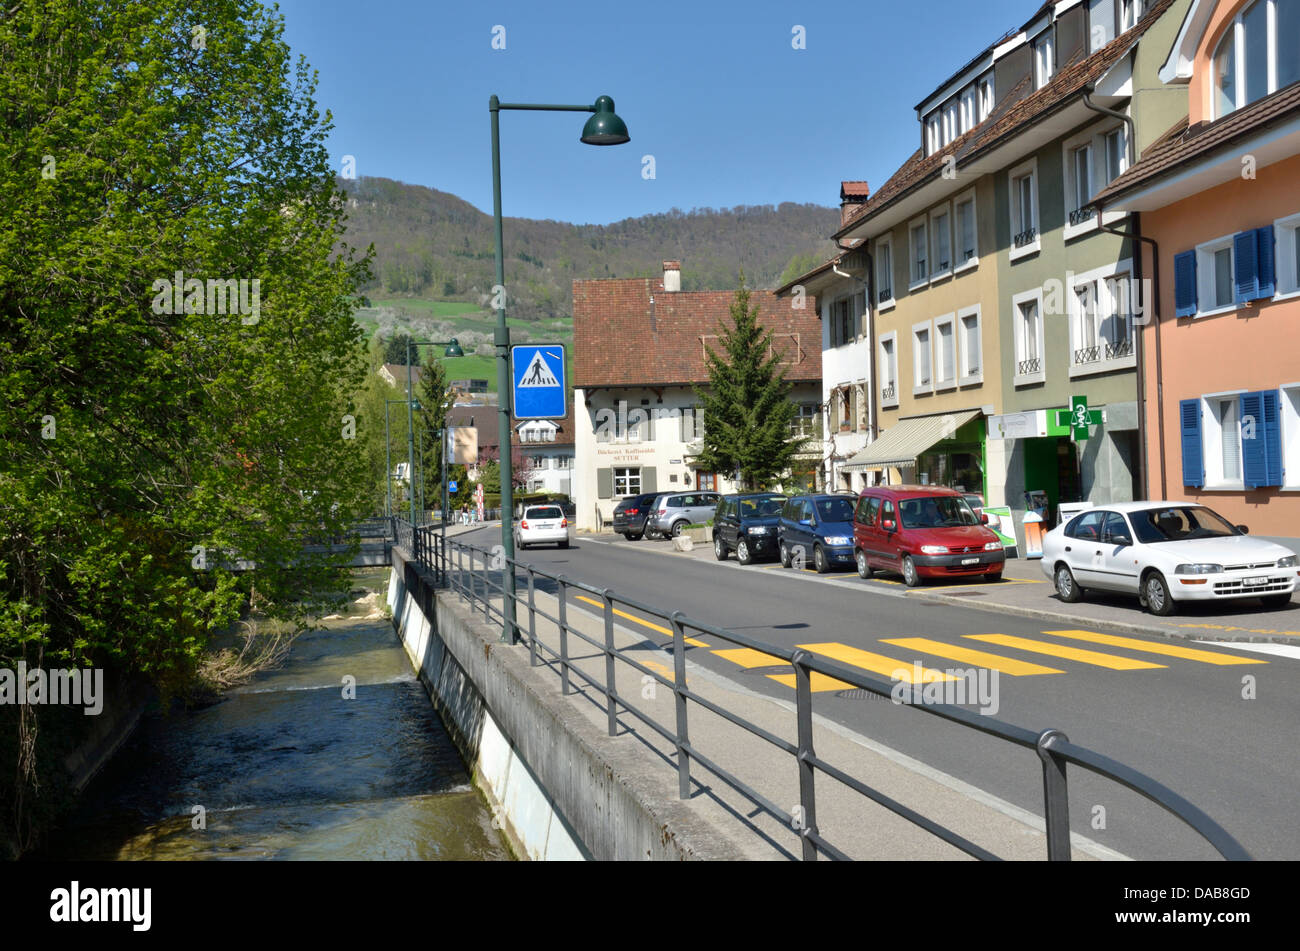 Rheinfelderstrasse, Sissach, Basel-Landschaft, Switzerland. Stock Photo